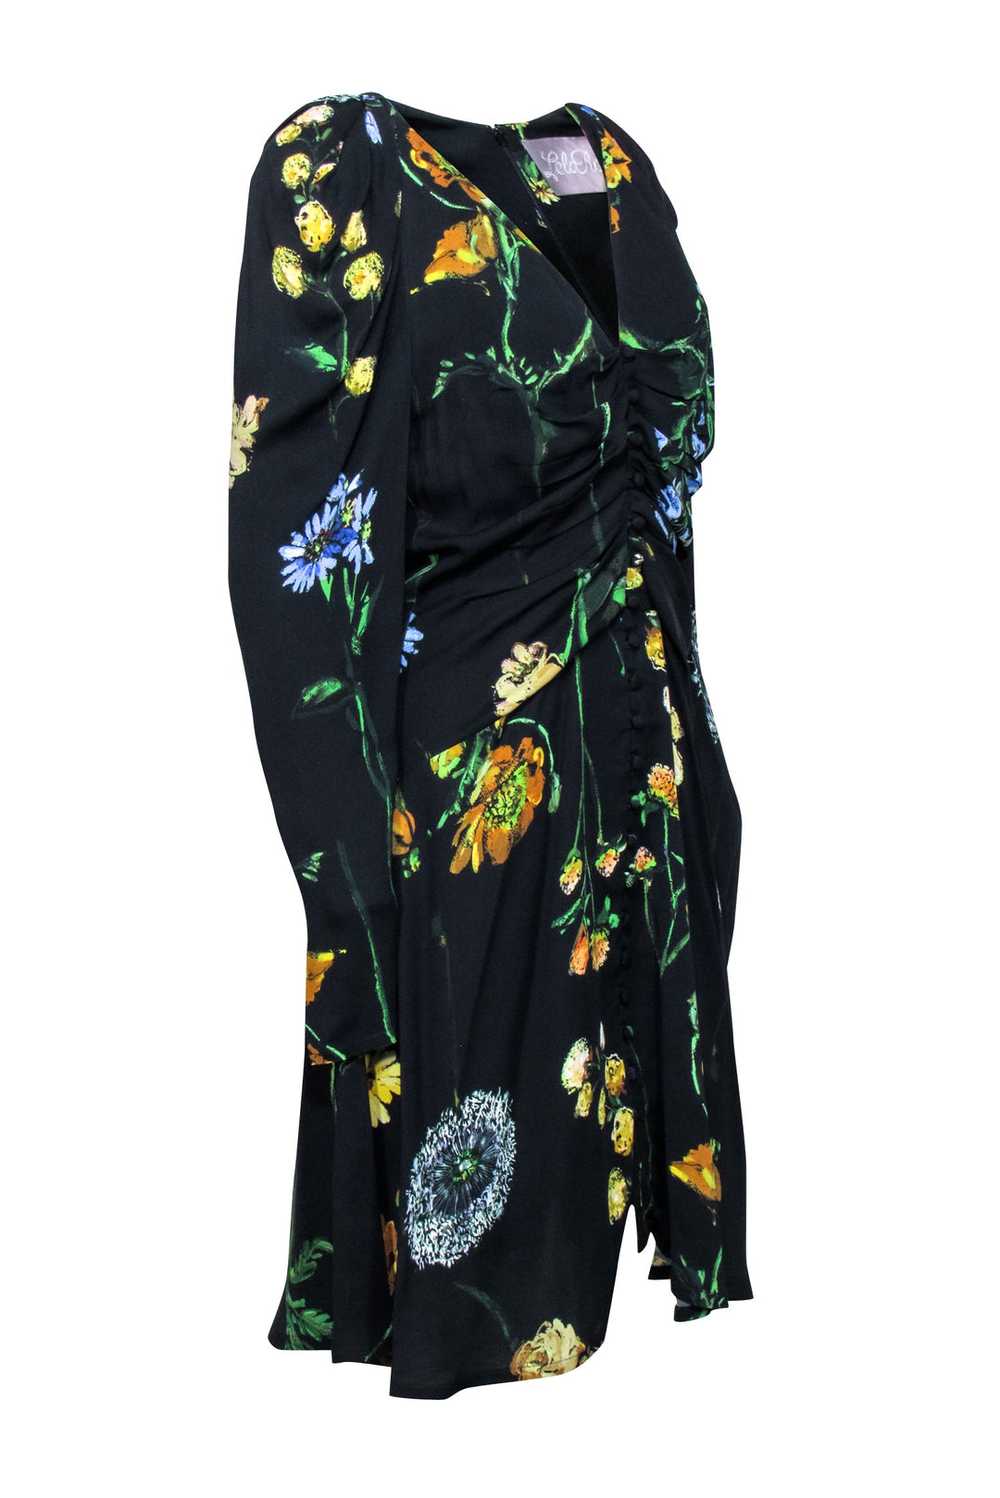 Lela Rose - Black & Multi Color Floral Print Dres… - image 2